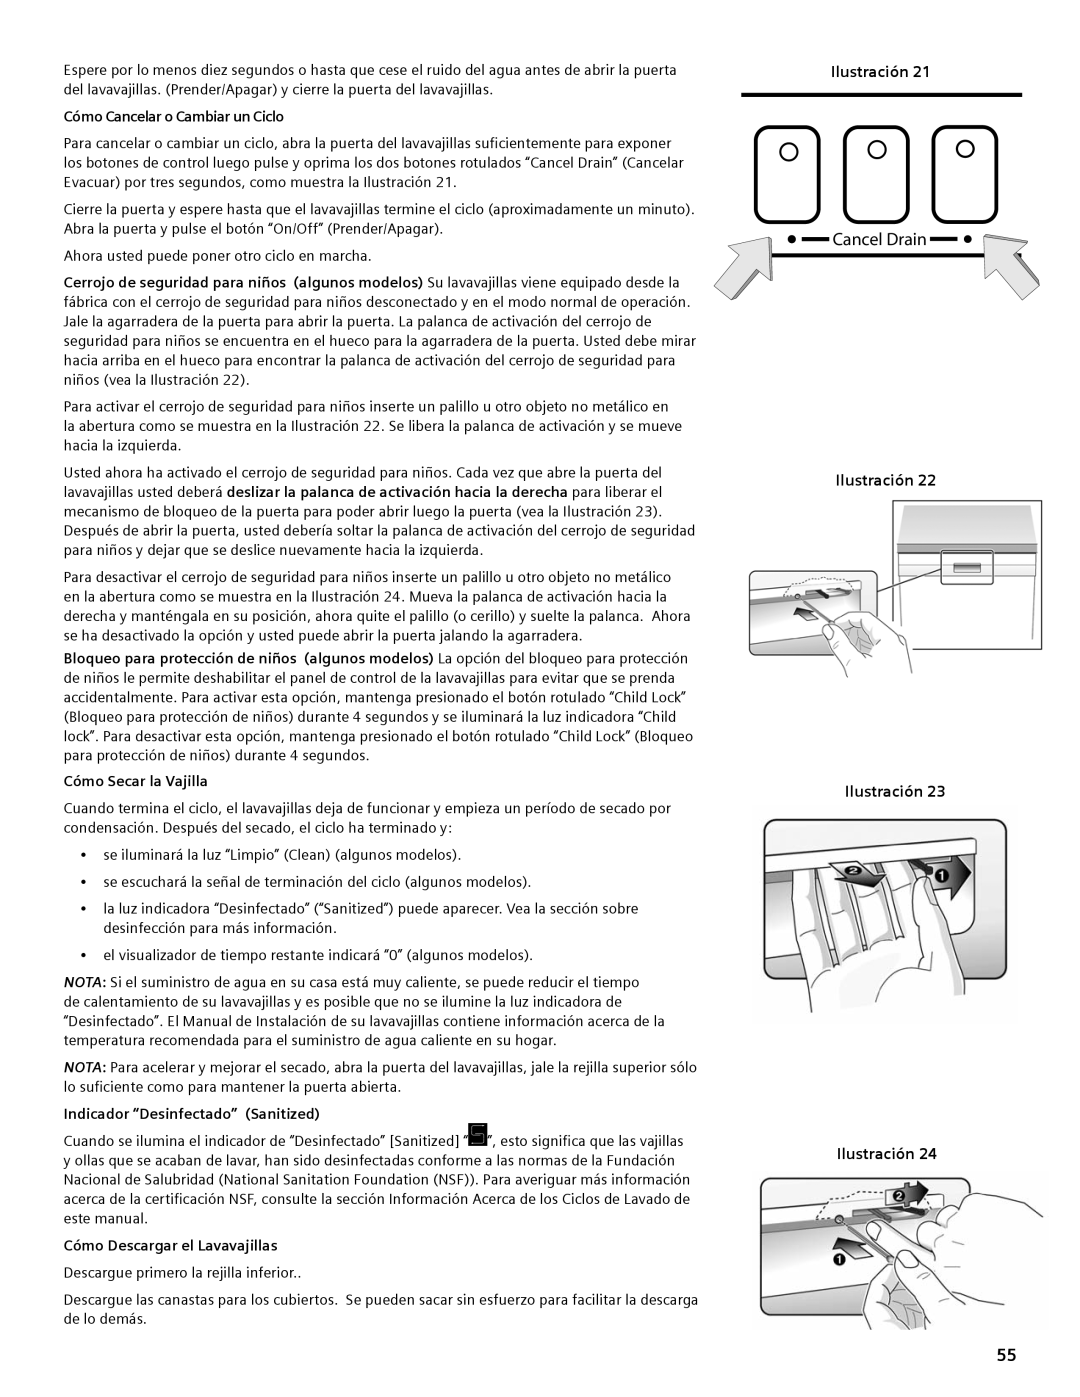 Bosch Appliances SHE44C manual Cancel Drain, Cómo Cancelar o Cambiar un Ciclo, Cómo Secar la Vajilla 